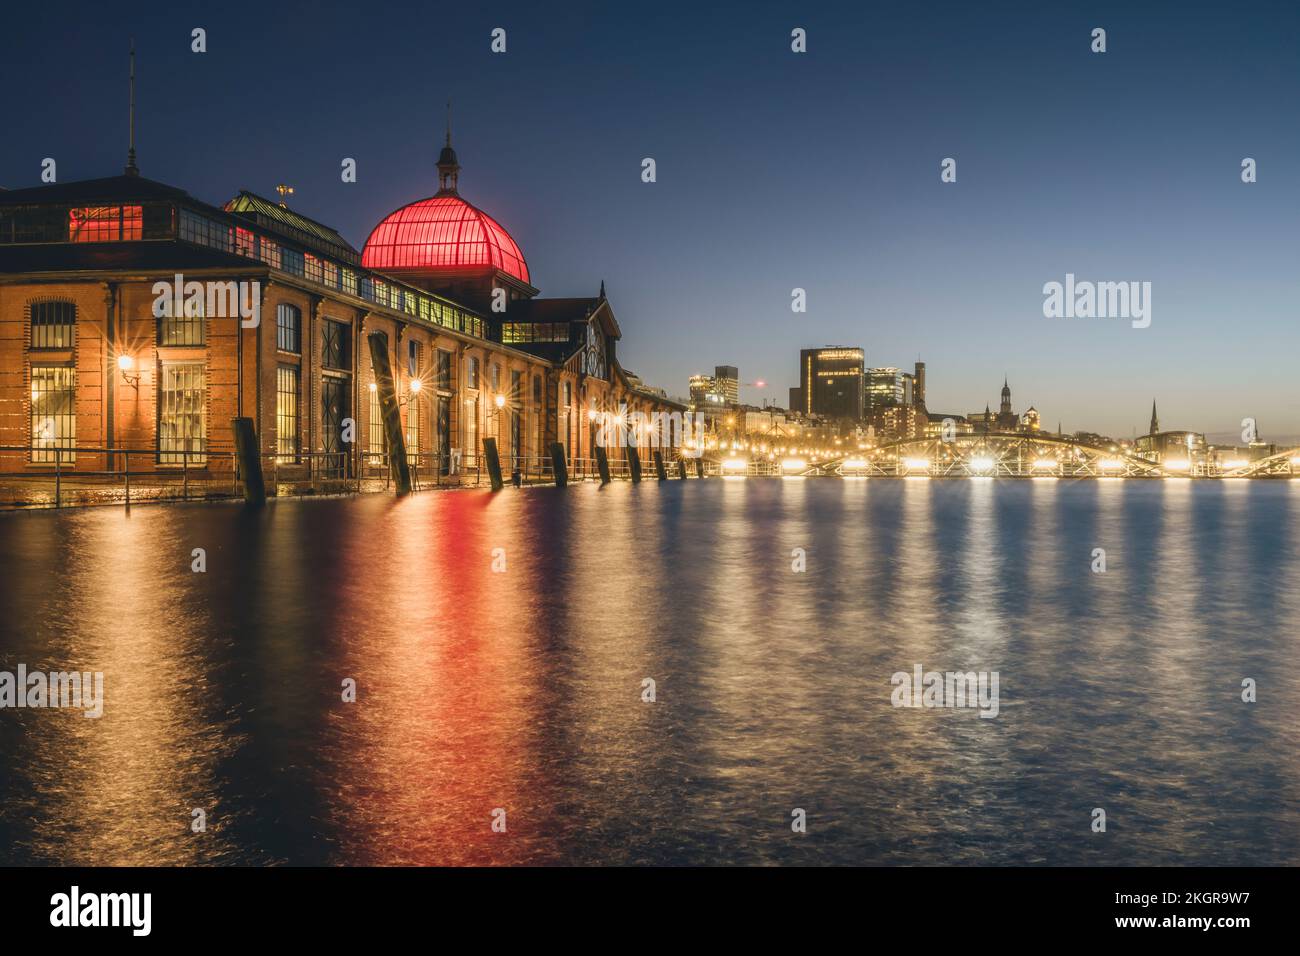 Deutschland, Hamburg, historische Fischauktionshalle bei Nacht Stockfoto